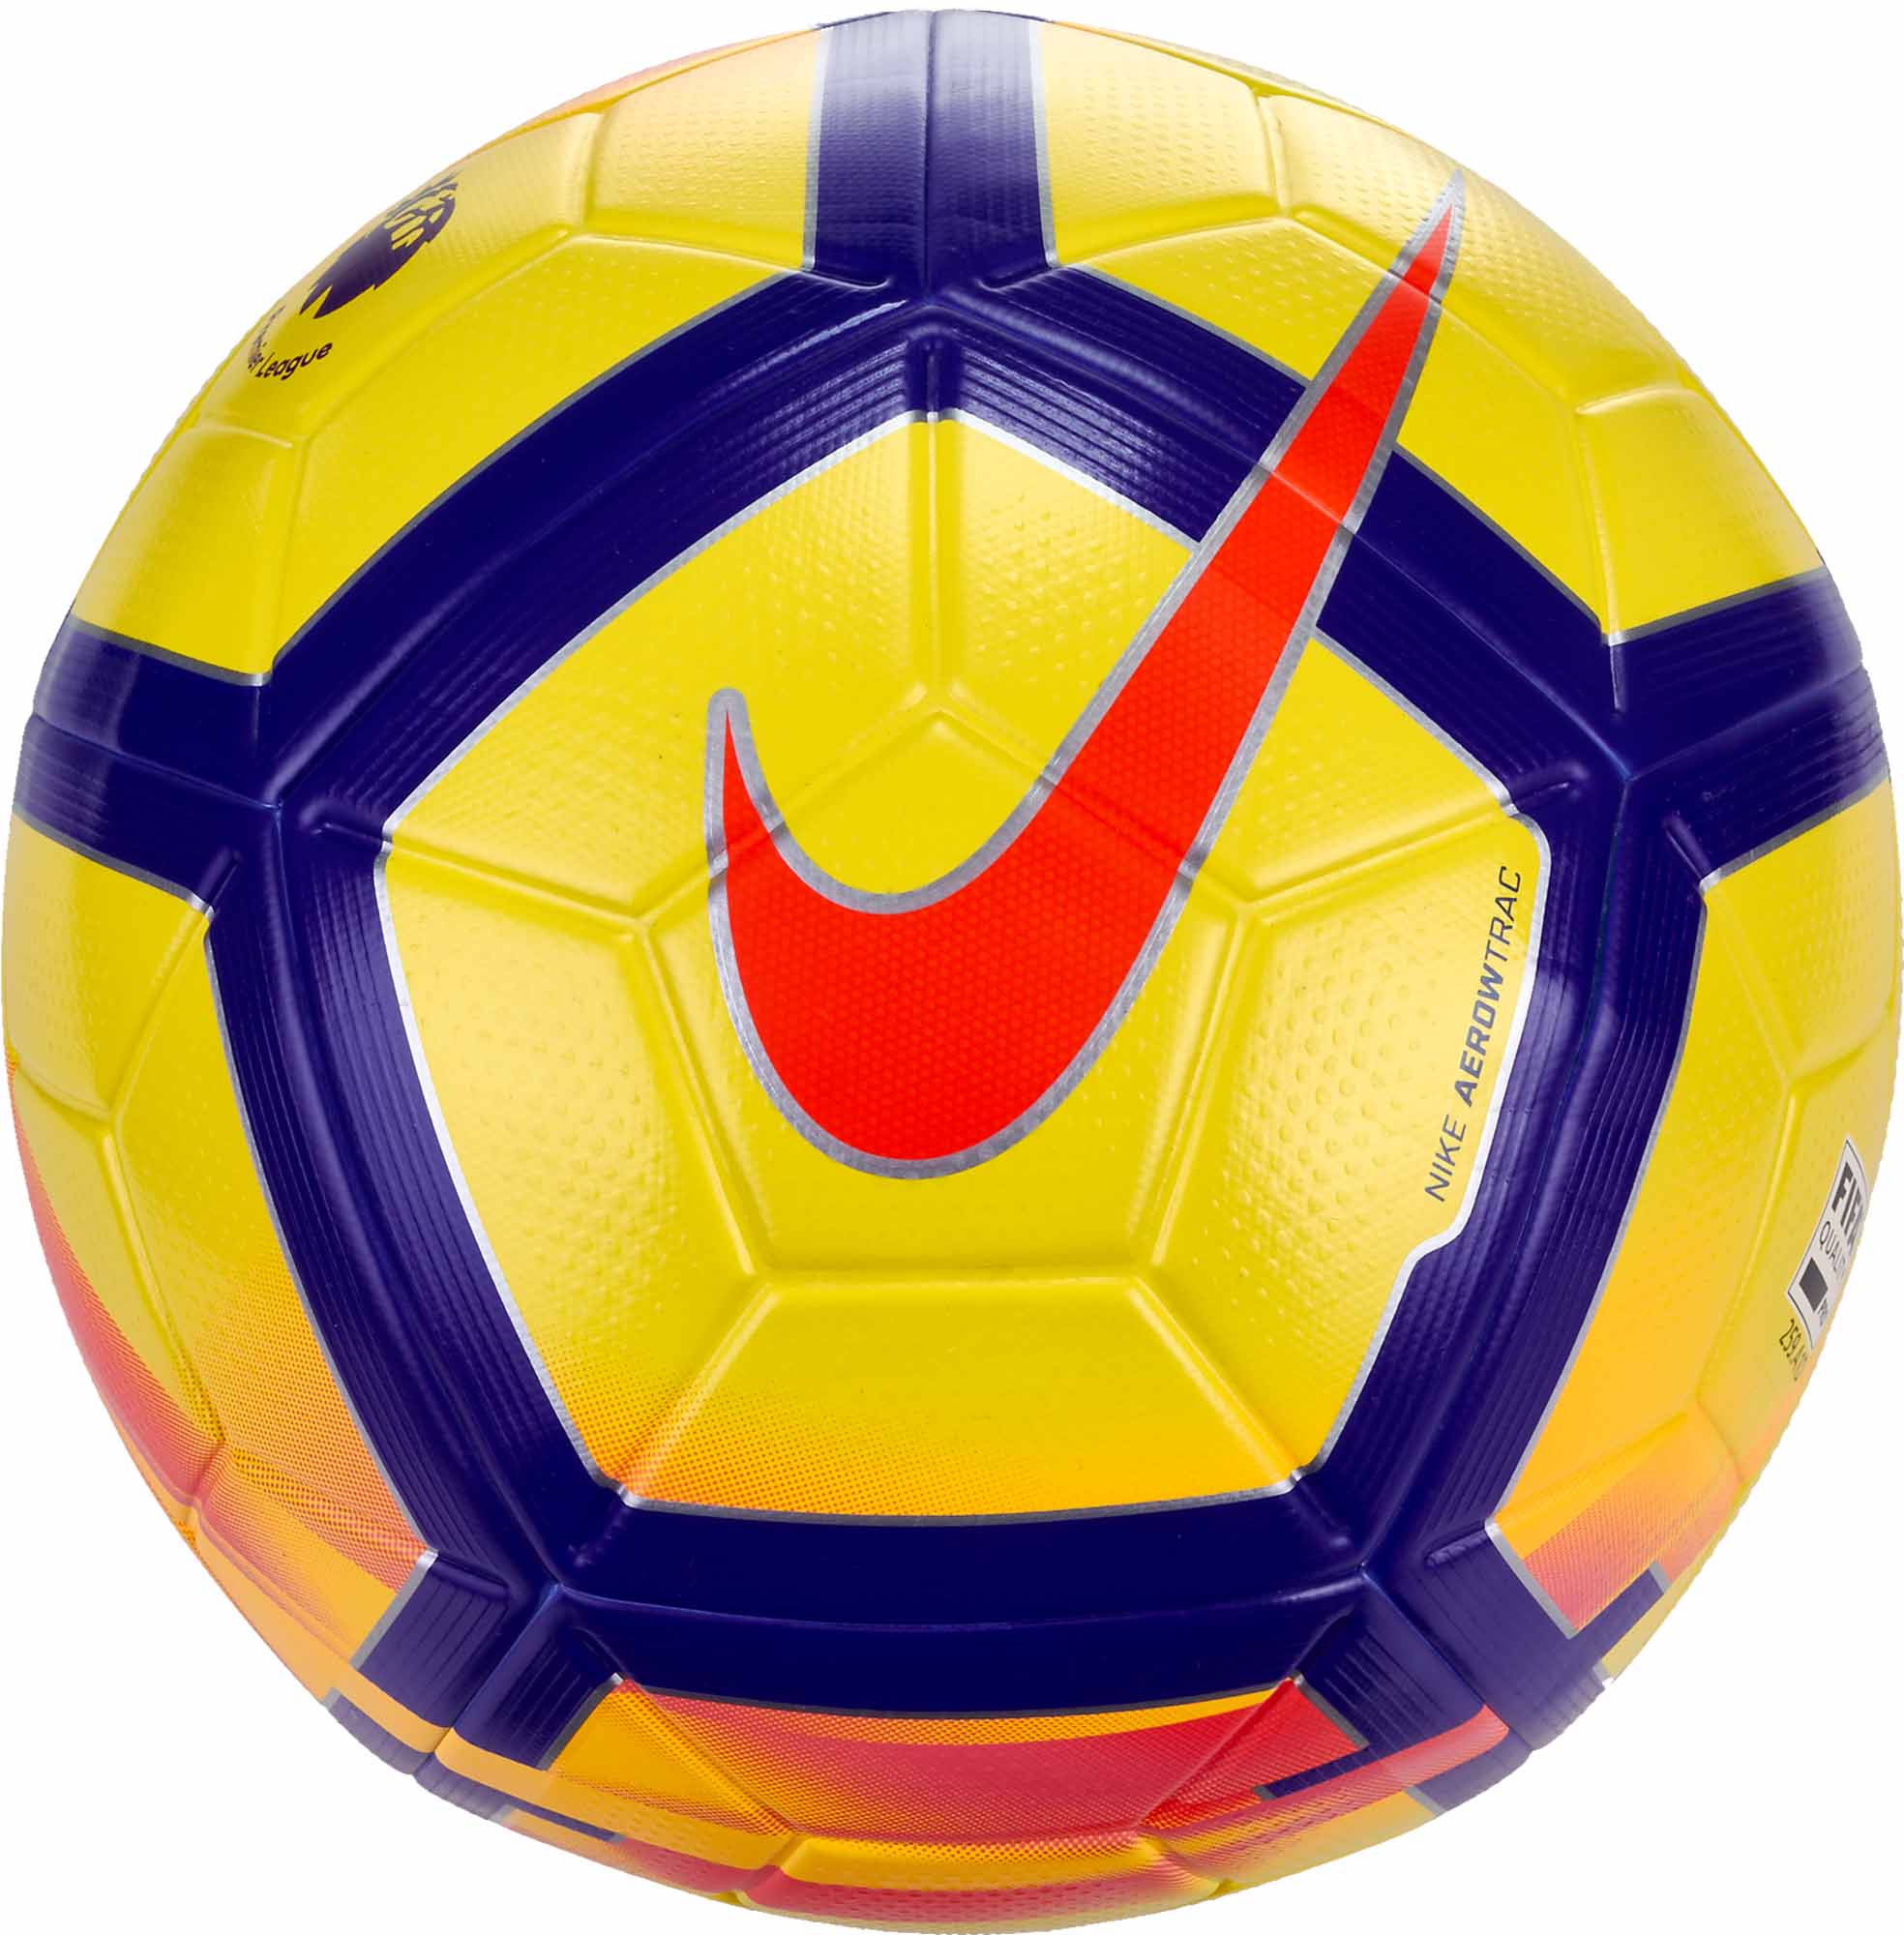 Nike Premier League Ball - Gambar Bola